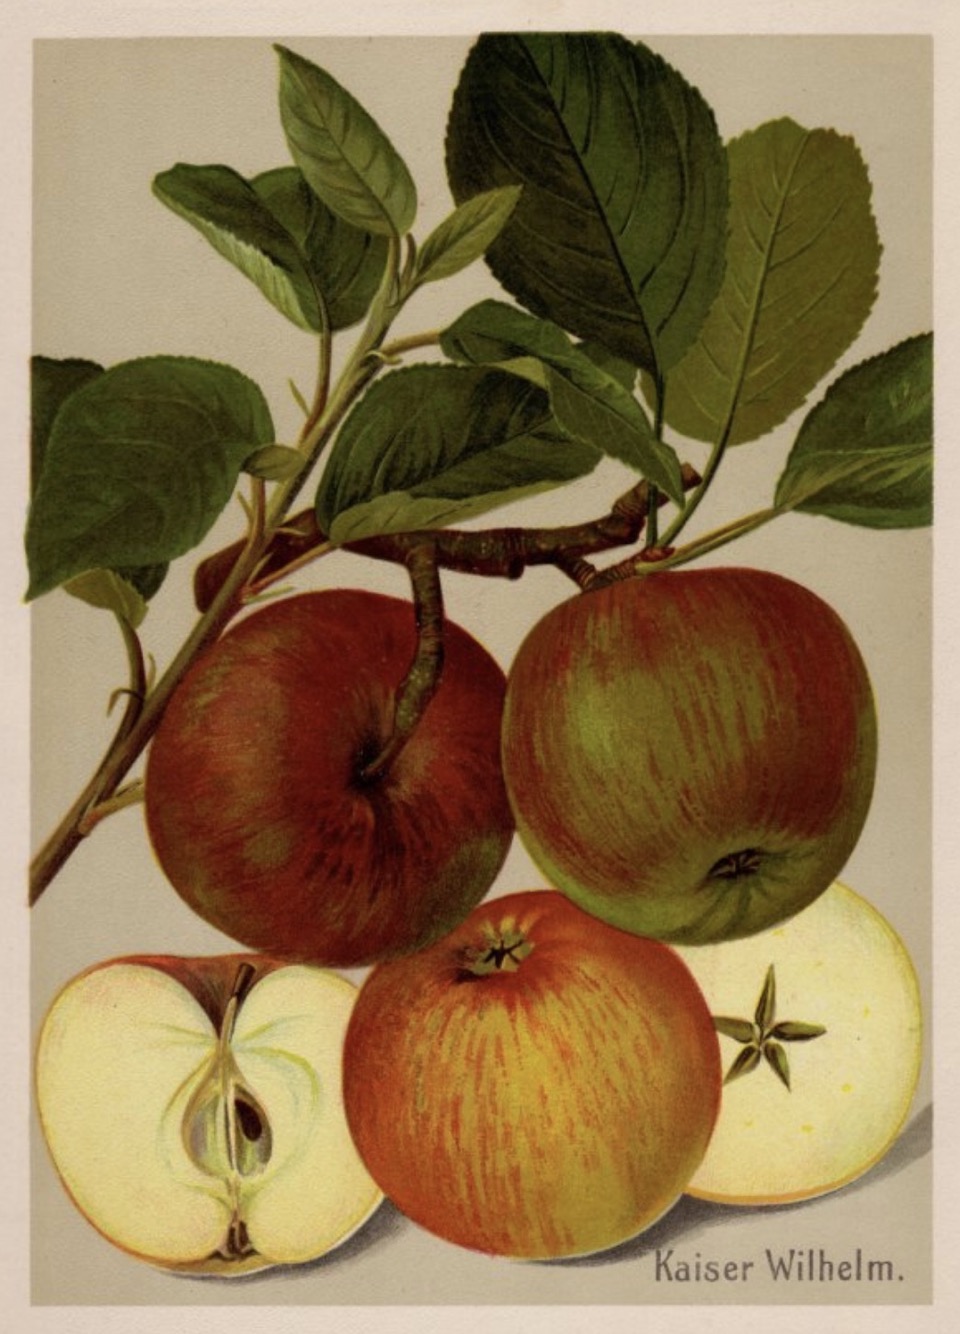 Historische Abbildung rot-grüner und aufgeschnittener Äpfel, dazu ein Ast und Blätter; BUND Lemgo Obstsortendatenbank